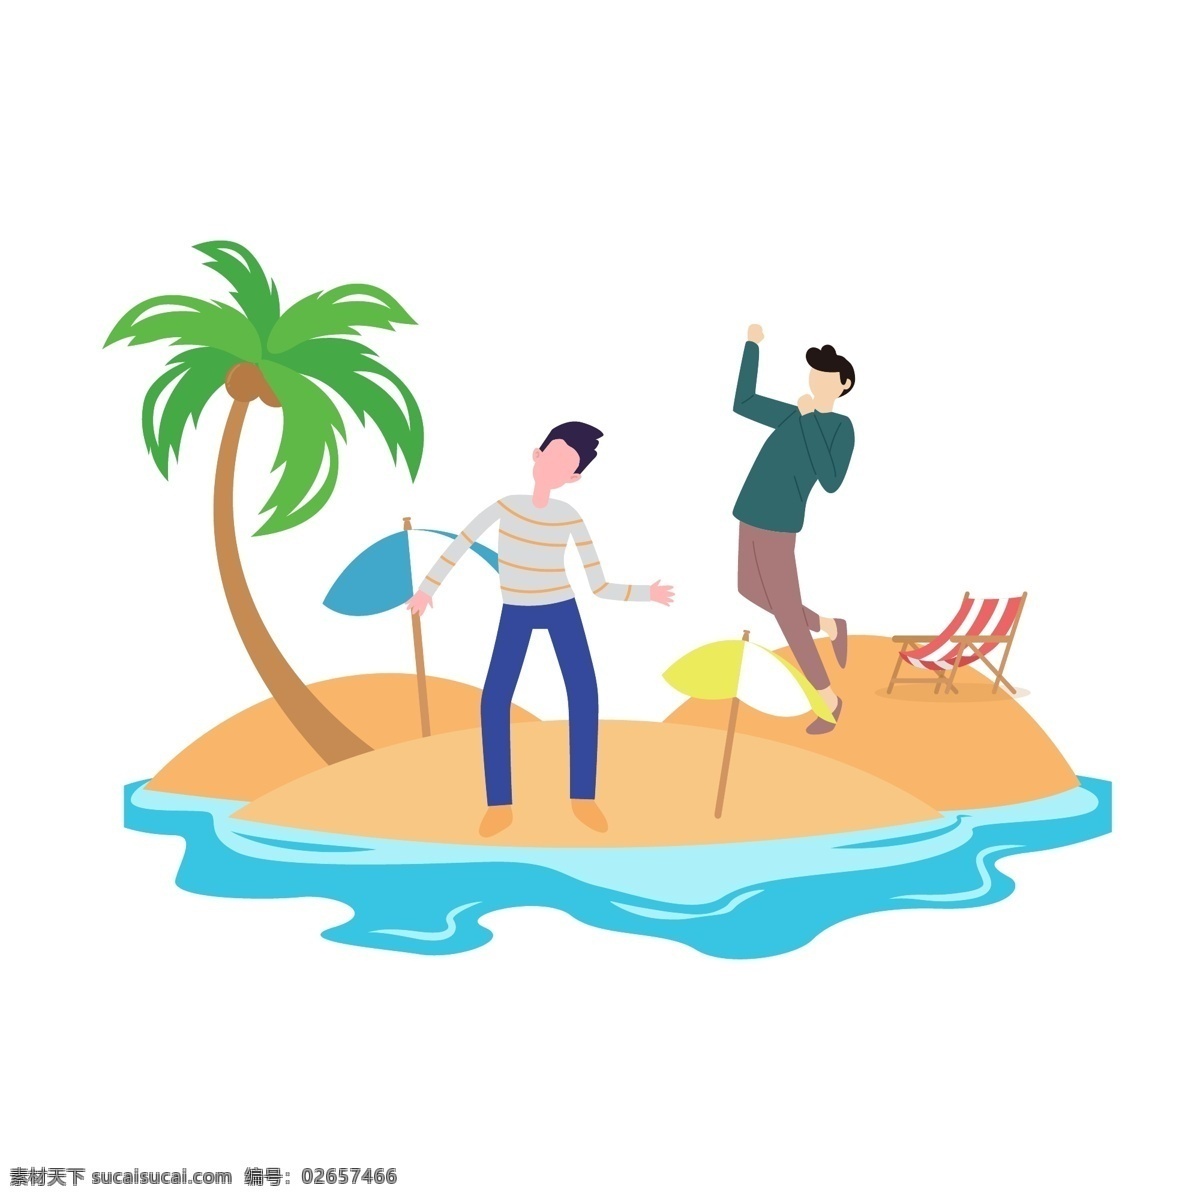 卡 通风 盛夏 海岛 游玩 度假 元素 夏季 岛屿 椰子 海洋 遮阳伞